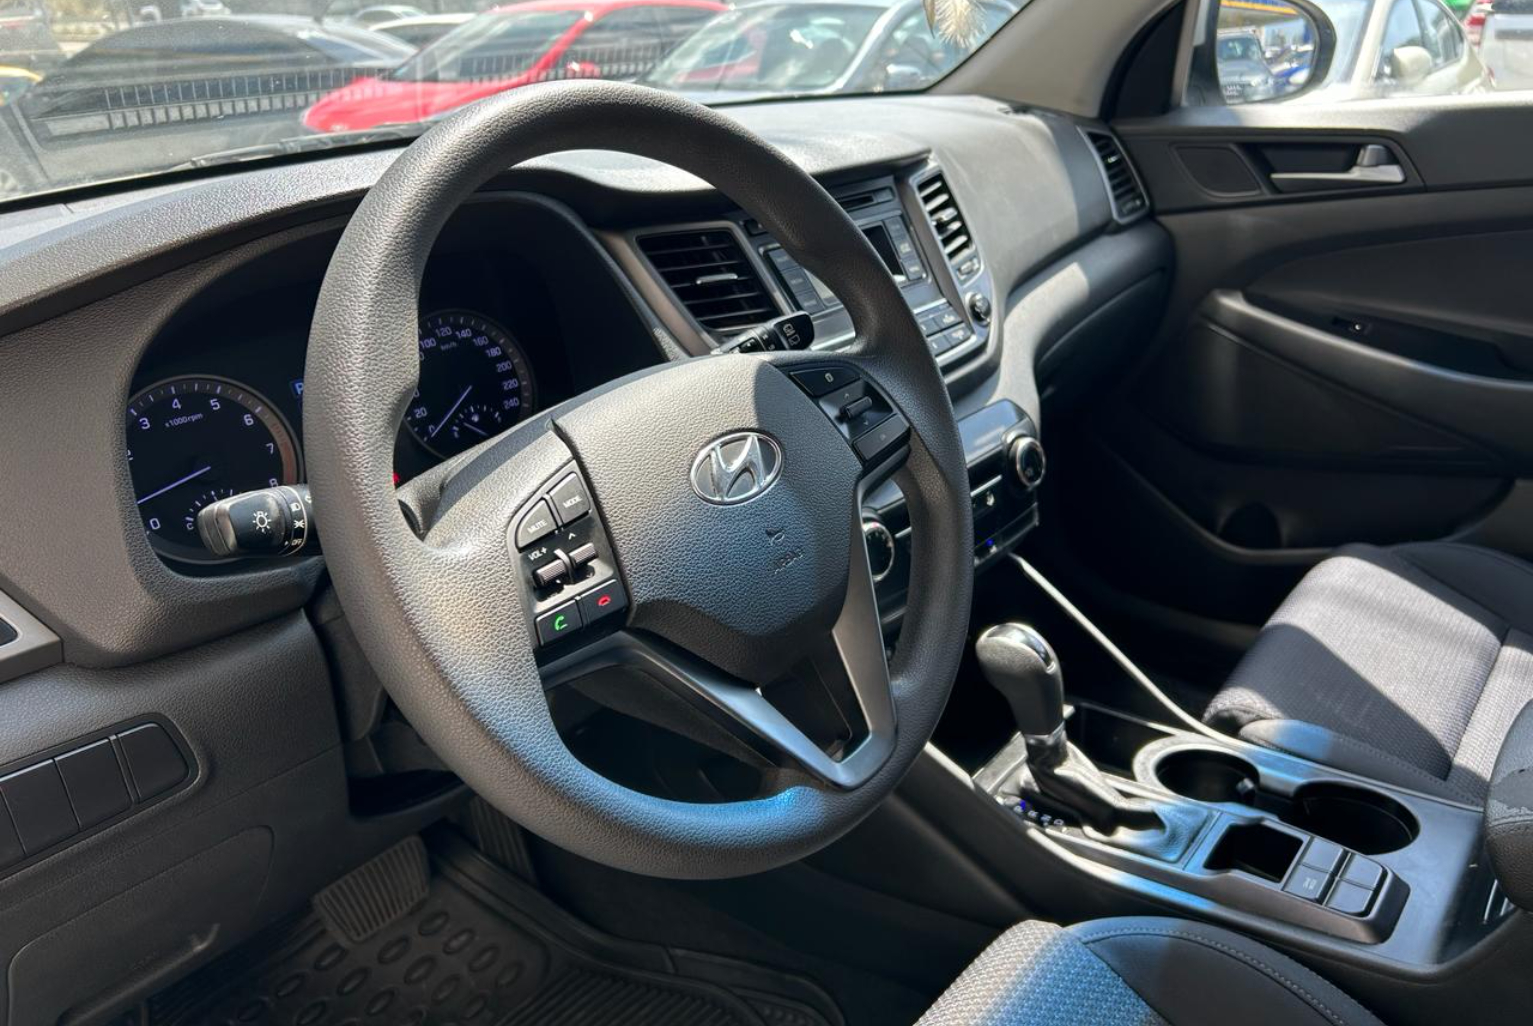 Hyundai Tucson 2016 Automático color Plateado, Imagen #7